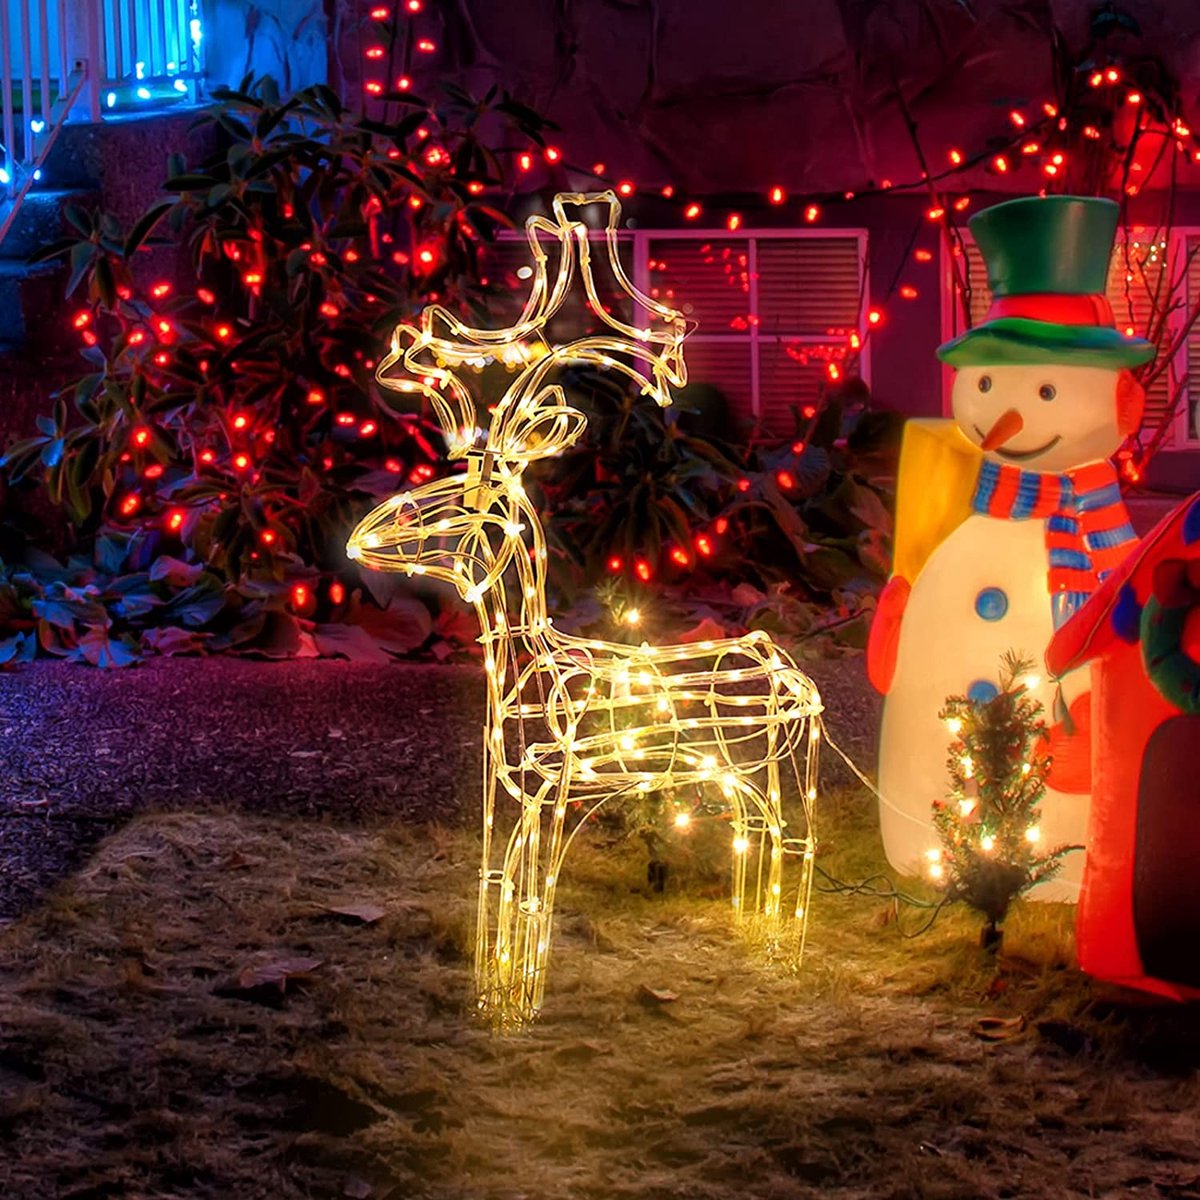 Selwo 60 cm rendier kerstdecoratie hert verlicht, led-lichtslang eland kerstdecoratie buiten [Energieklasse A+++]